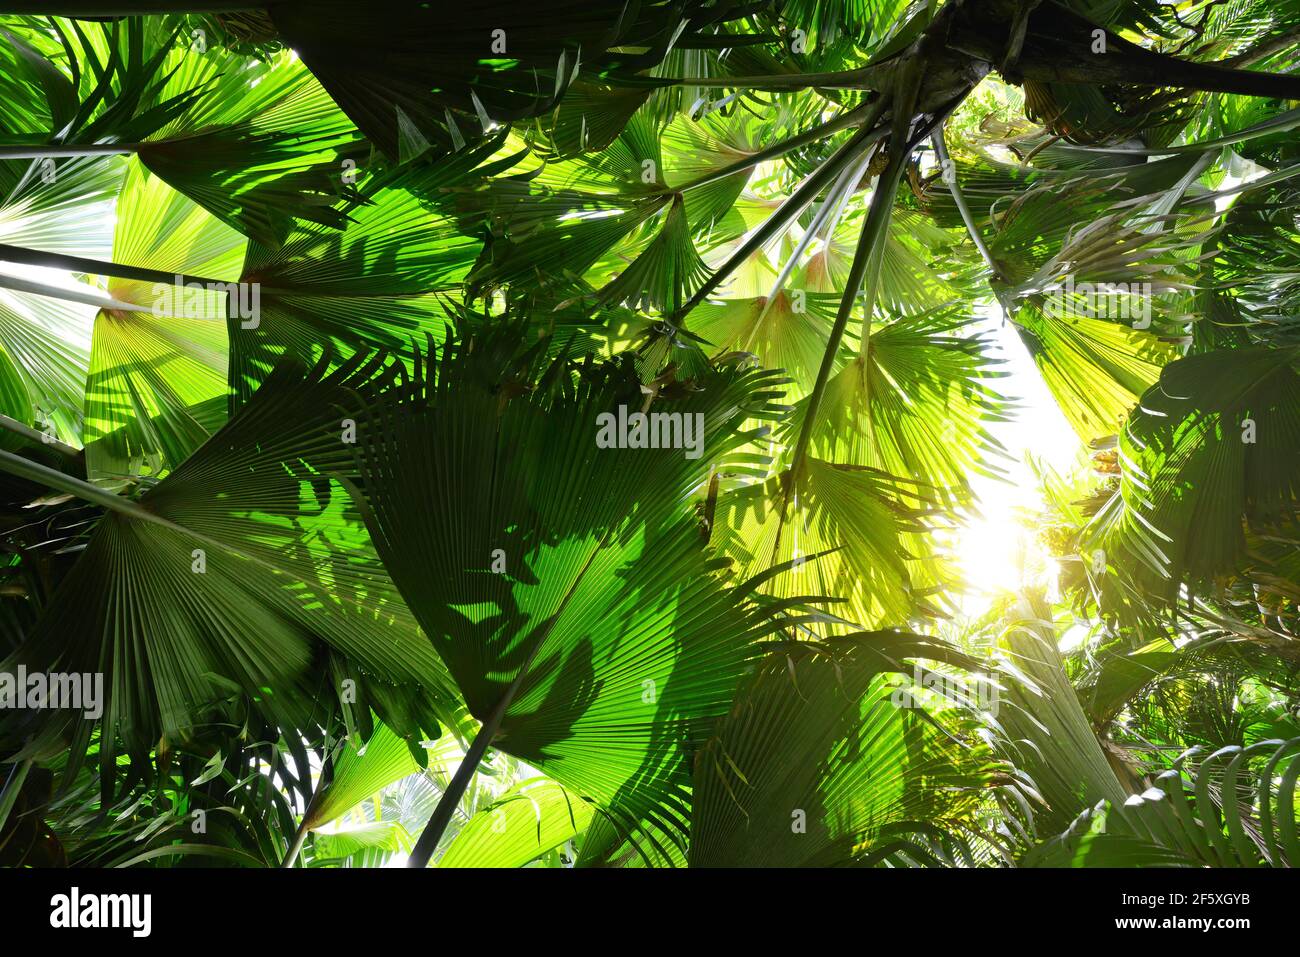 Frische grüne Blätter Coco de mer Kokosnussbaum ( Lodoicea maldivica ) endemische Palmenarten, die nur auf den Seychellen wachsen. Tropischer Regenwald Stockfoto